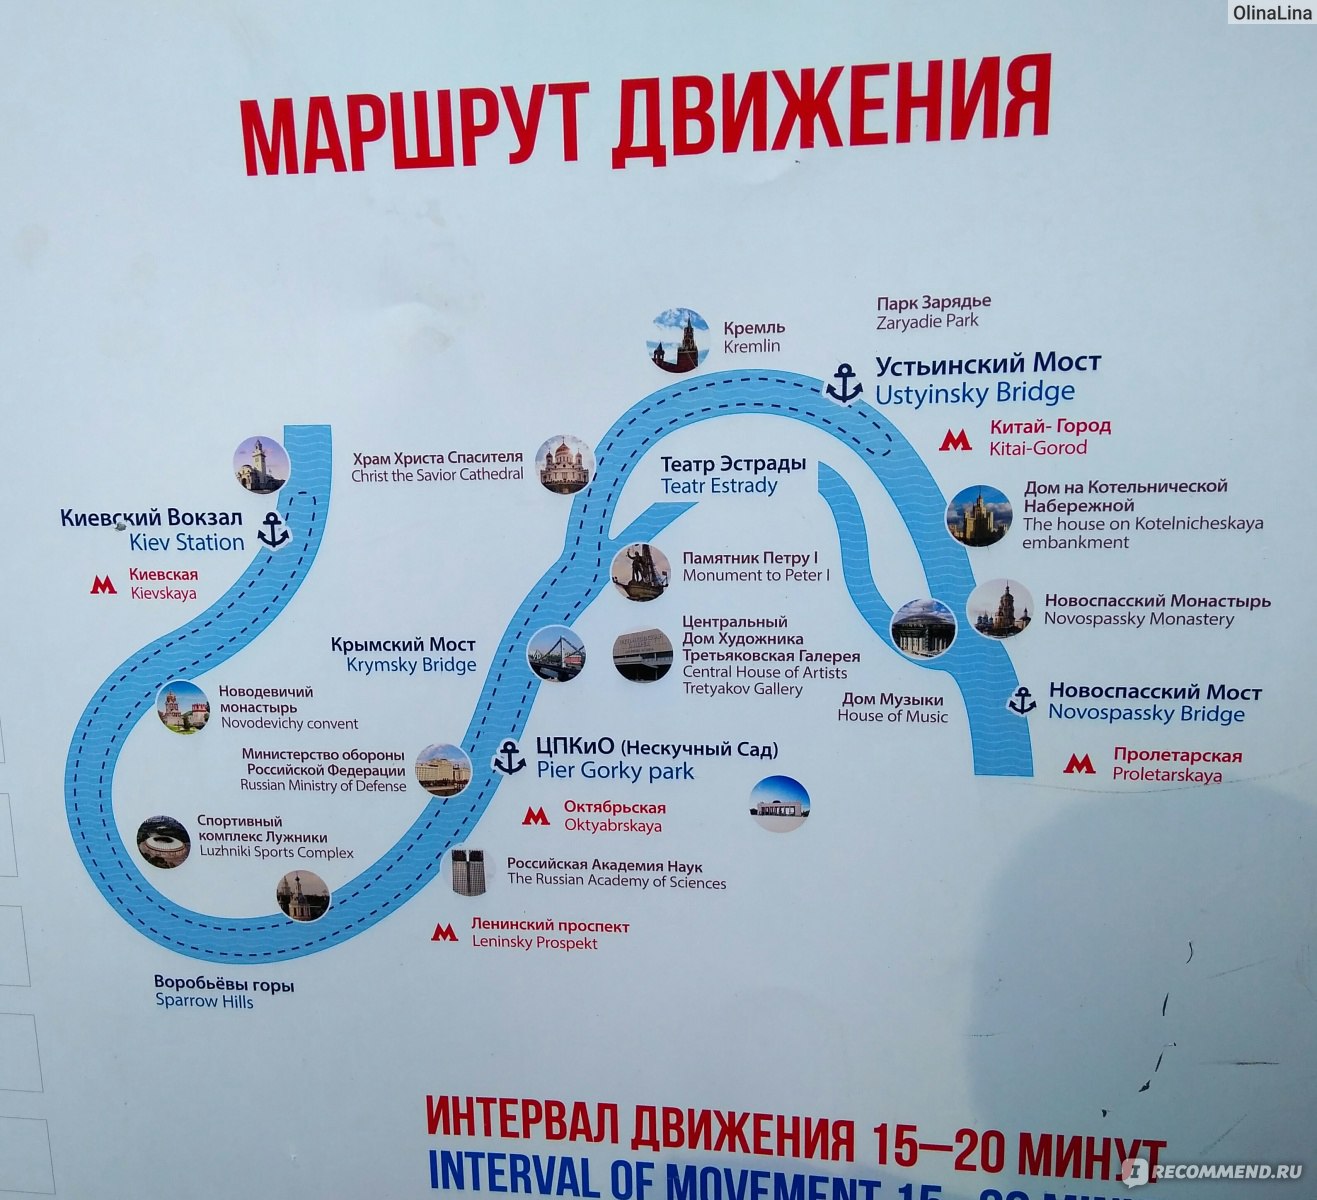 речной вокзал на карте